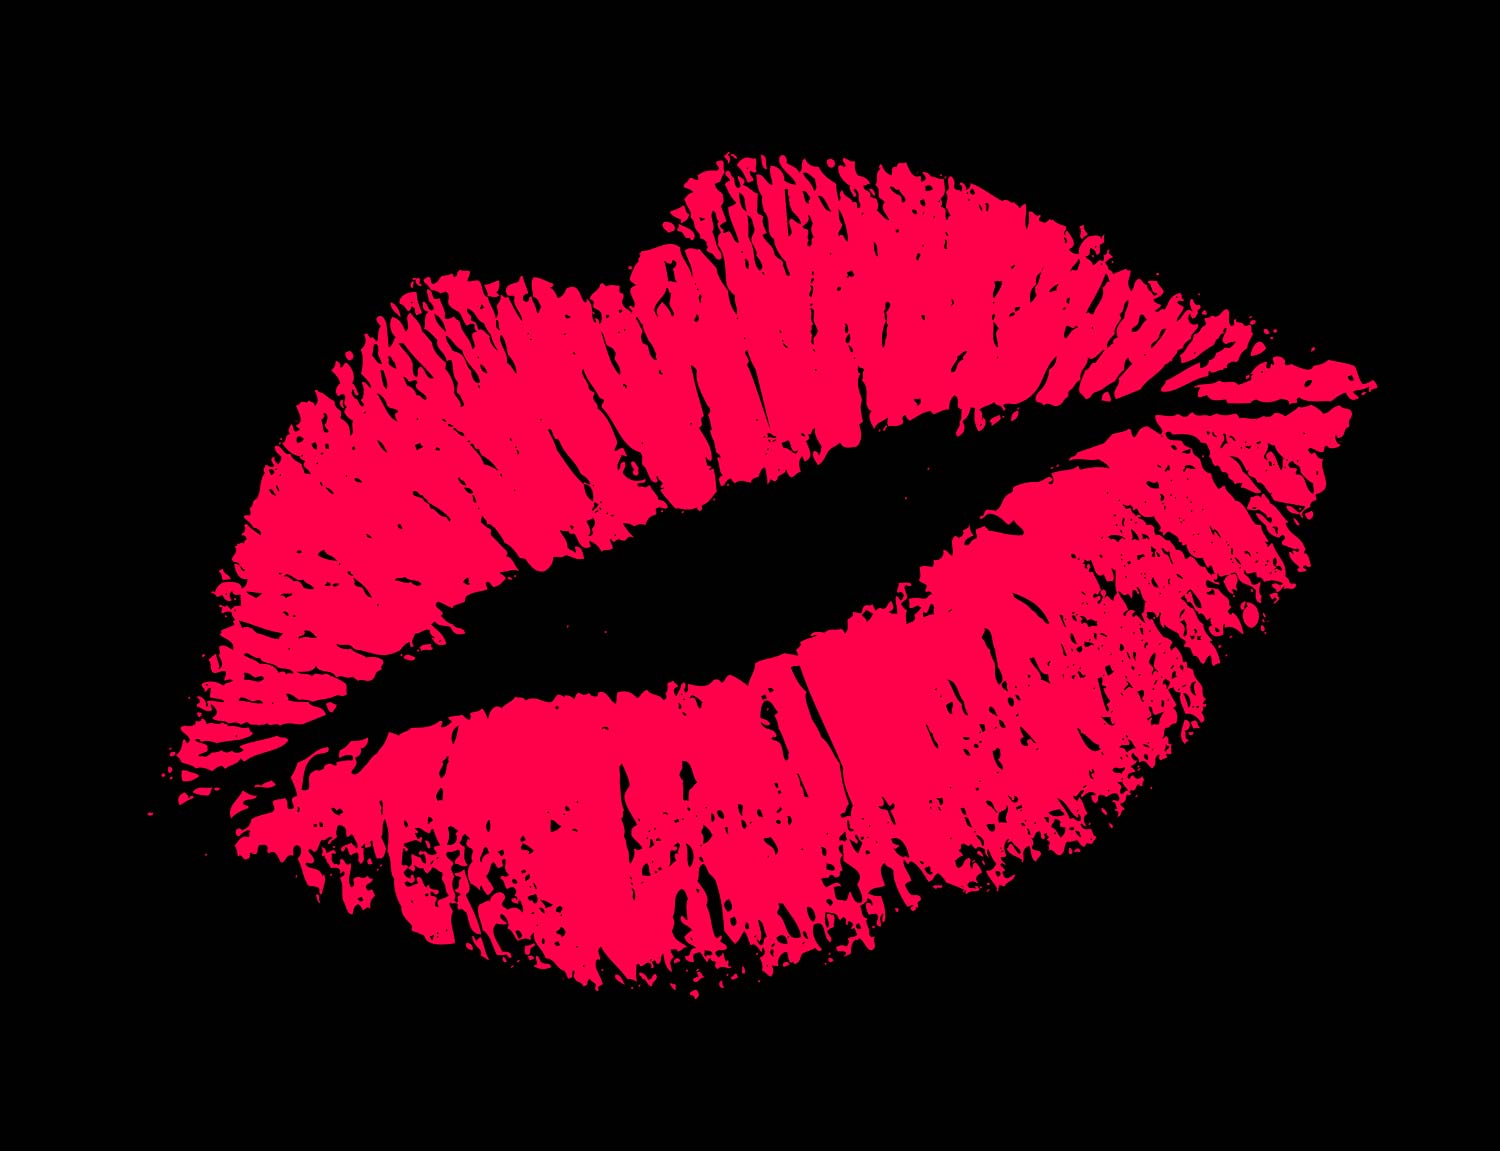 Wallpaper Kissing Lips - WallpaperSafari